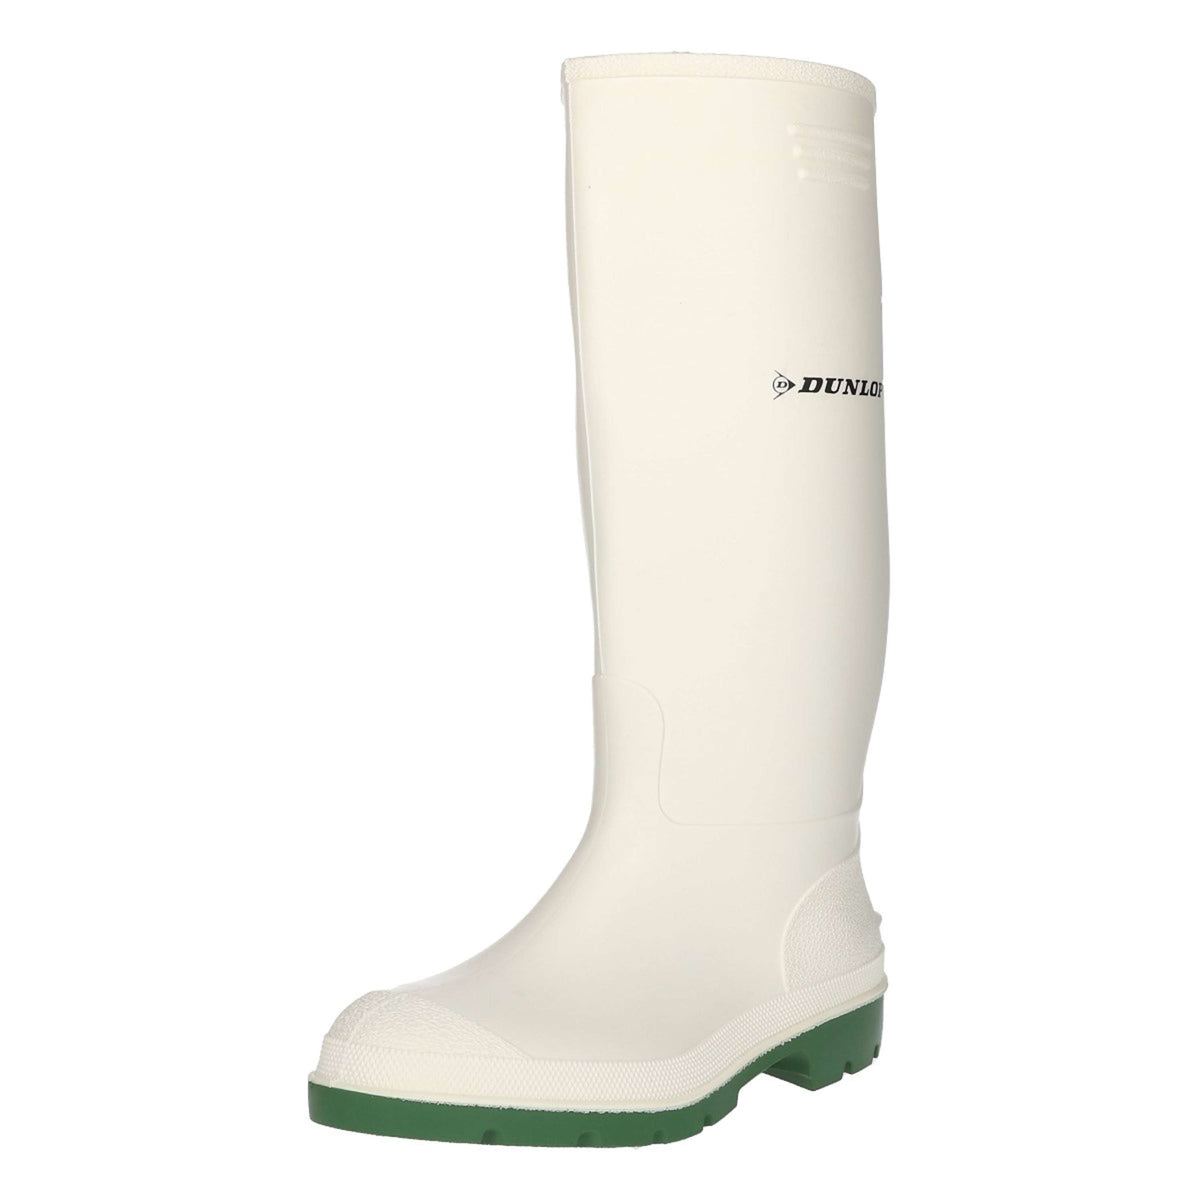 Dunlop 380bv Pricemaster Stiefel Weiß